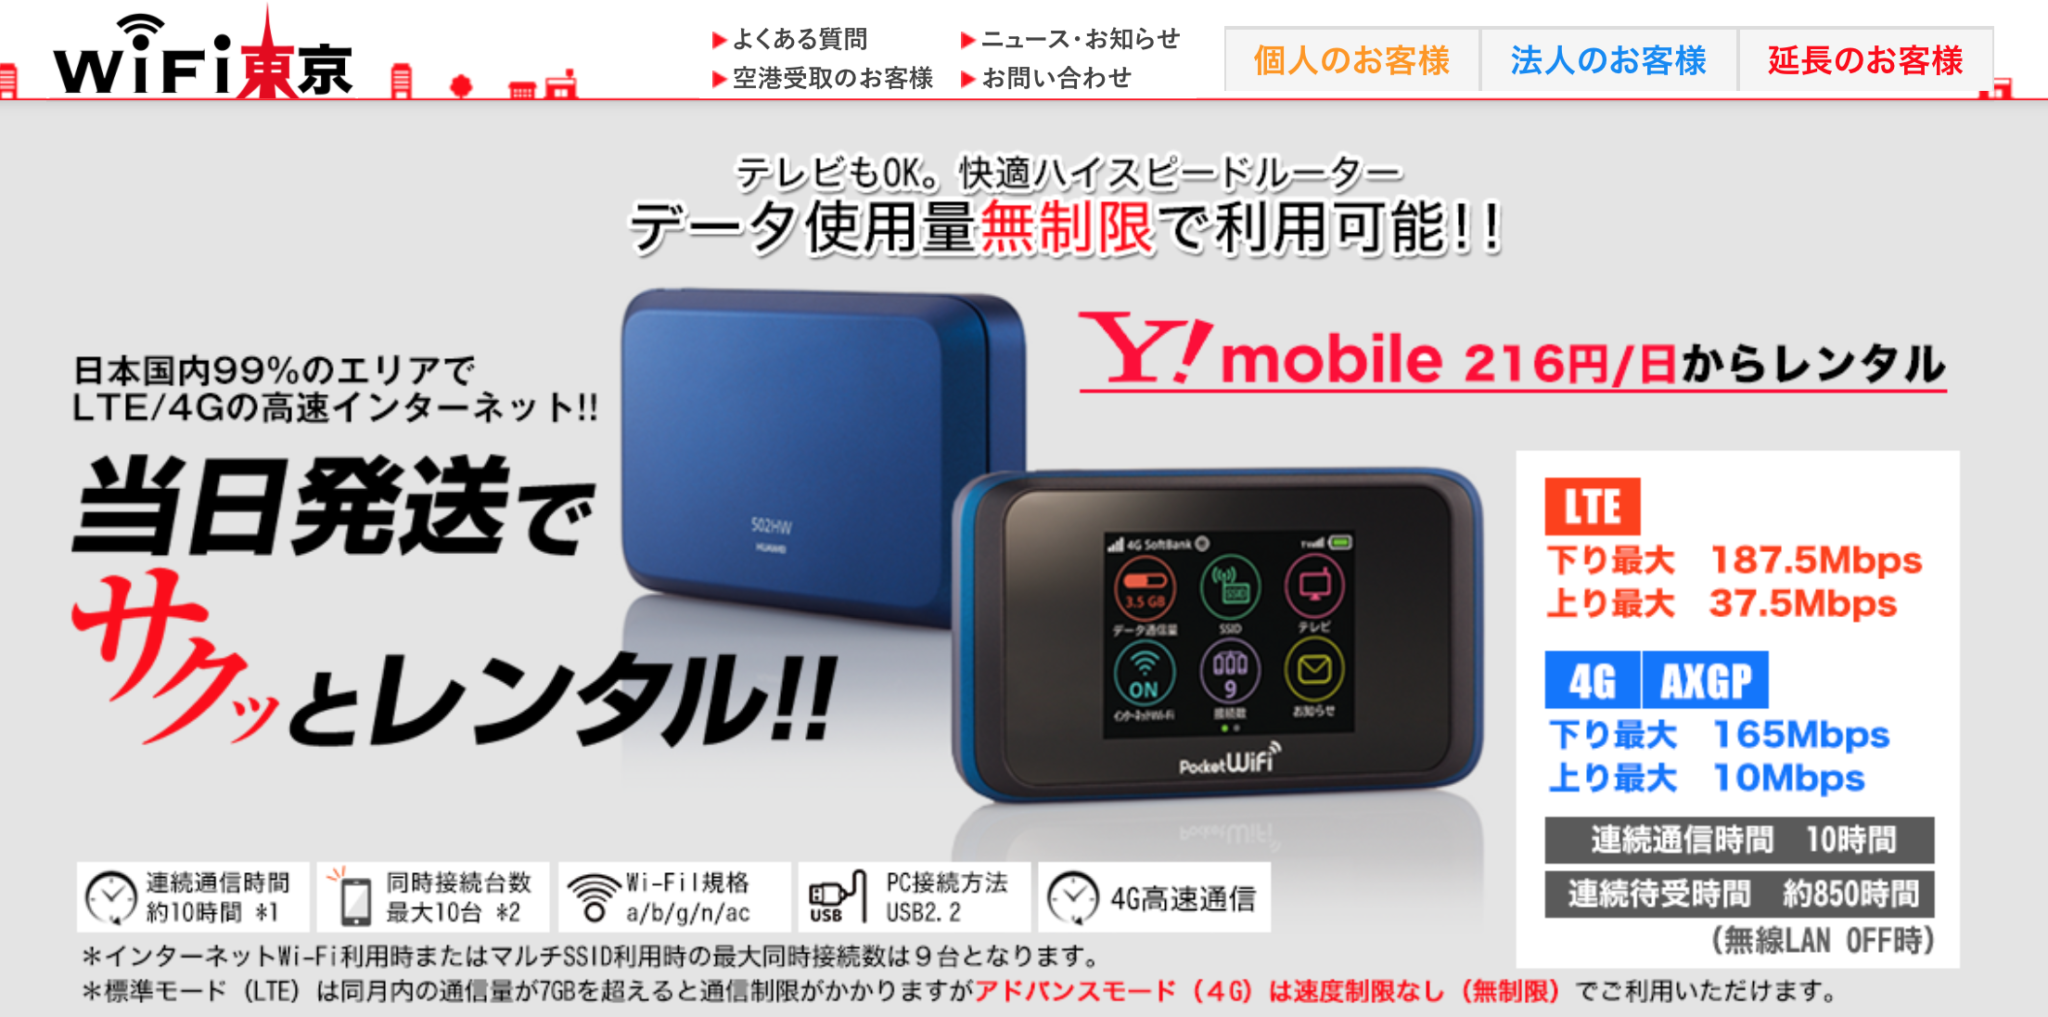 【国内用】ポケットWiFiレンタル 〜無制限・格安・LTE〜